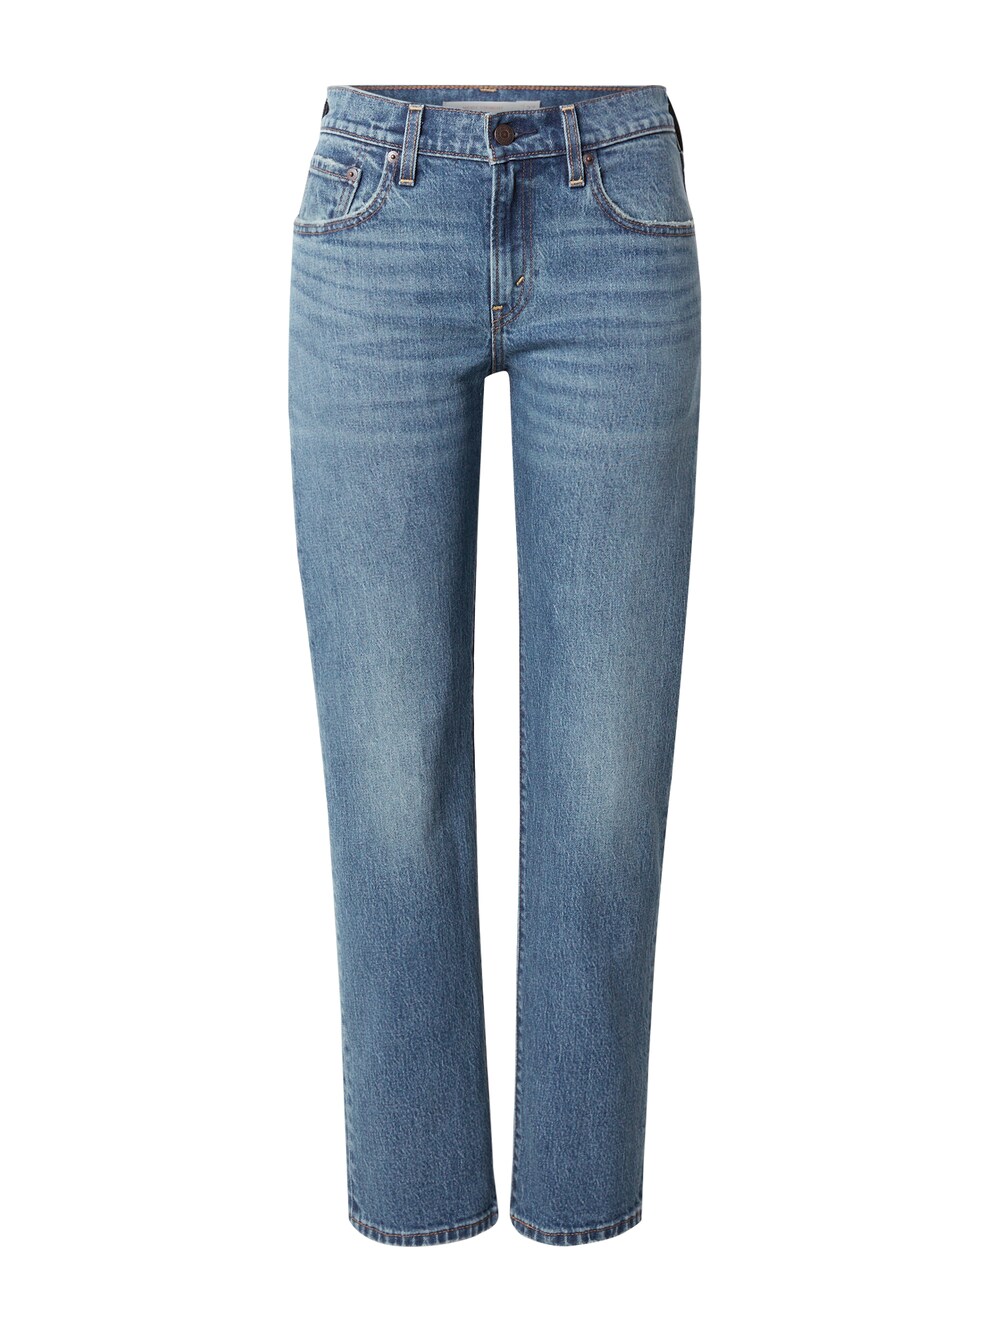 Обычные джинсы LEVIS MIDDY, синий